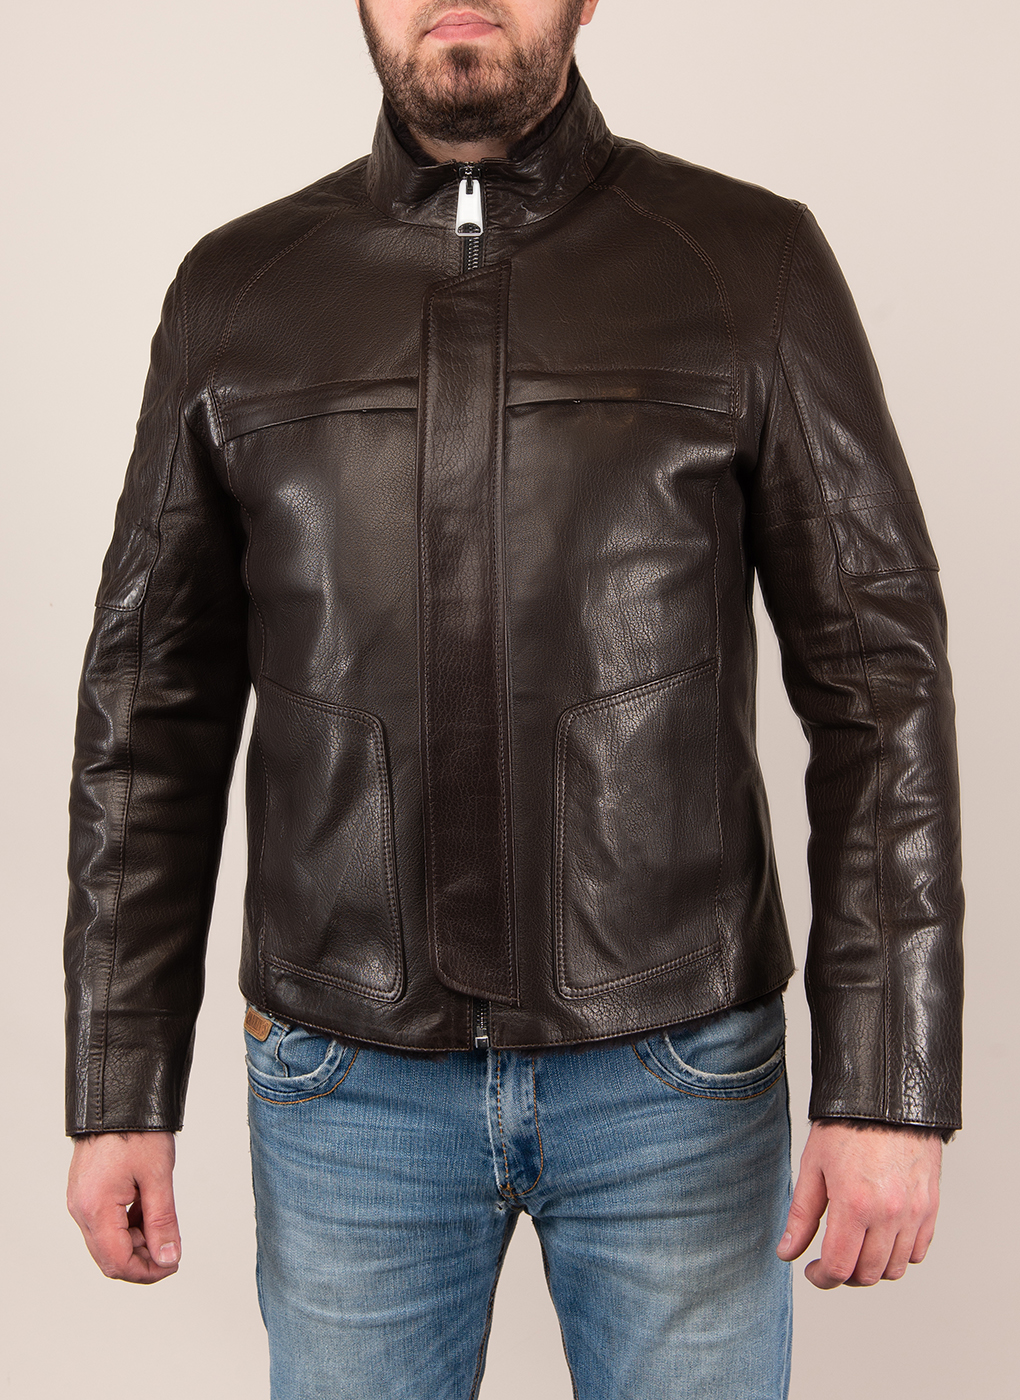 Кожаная куртка мужская Каляев 48960 коричневая 60 RU